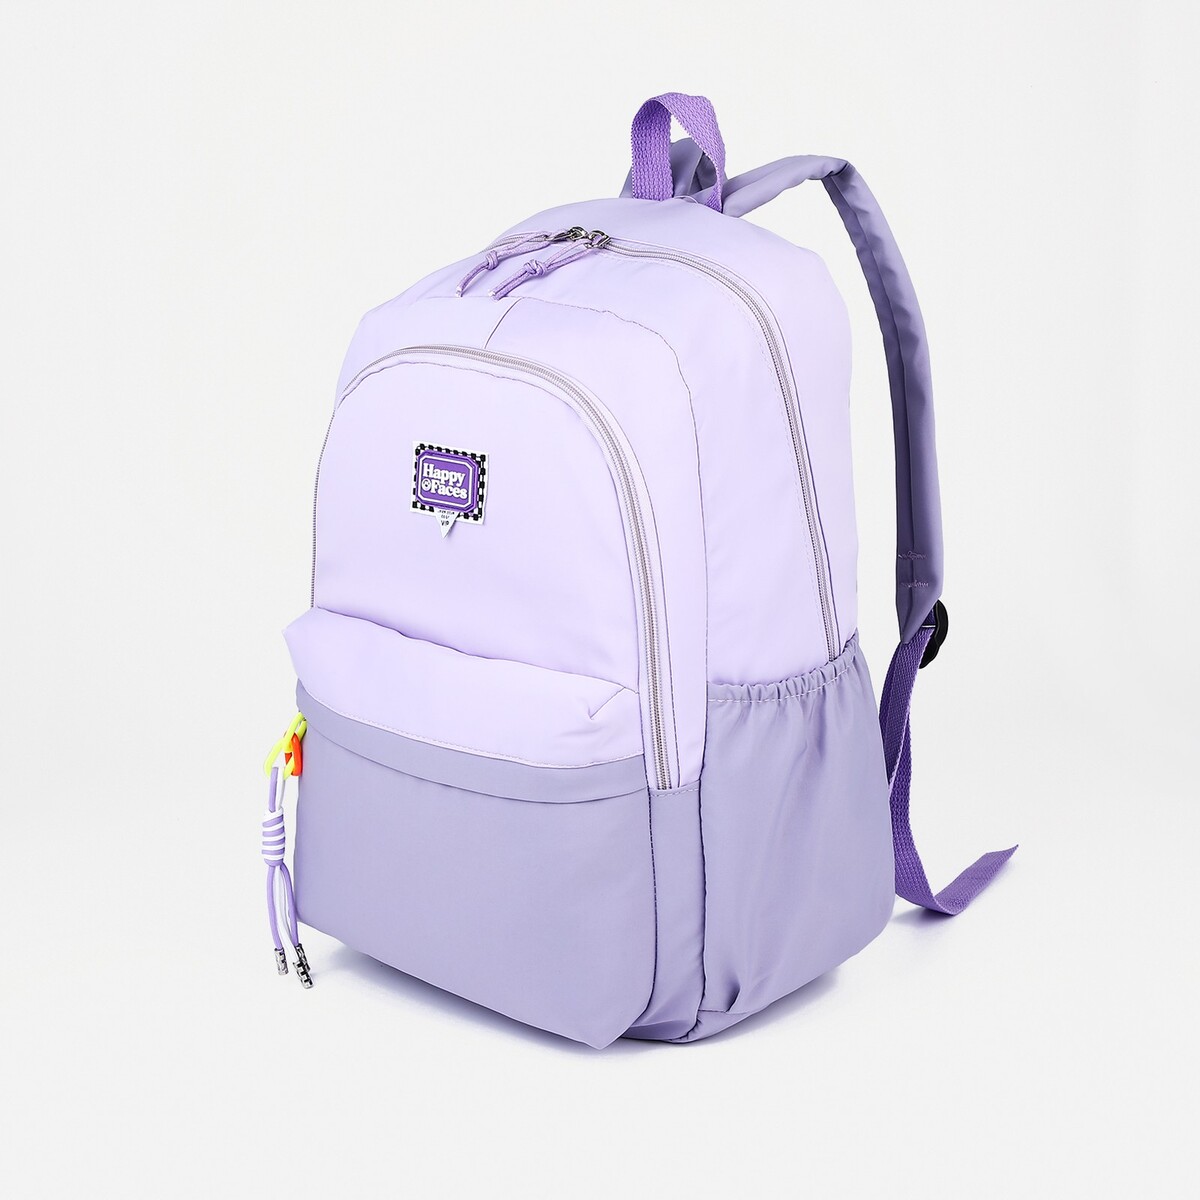 Рюкзак на молнии, 4 наружных кармана, цвет сиреневый рюкзак школьный из текстиля на молнии 4 кармана сиреневый